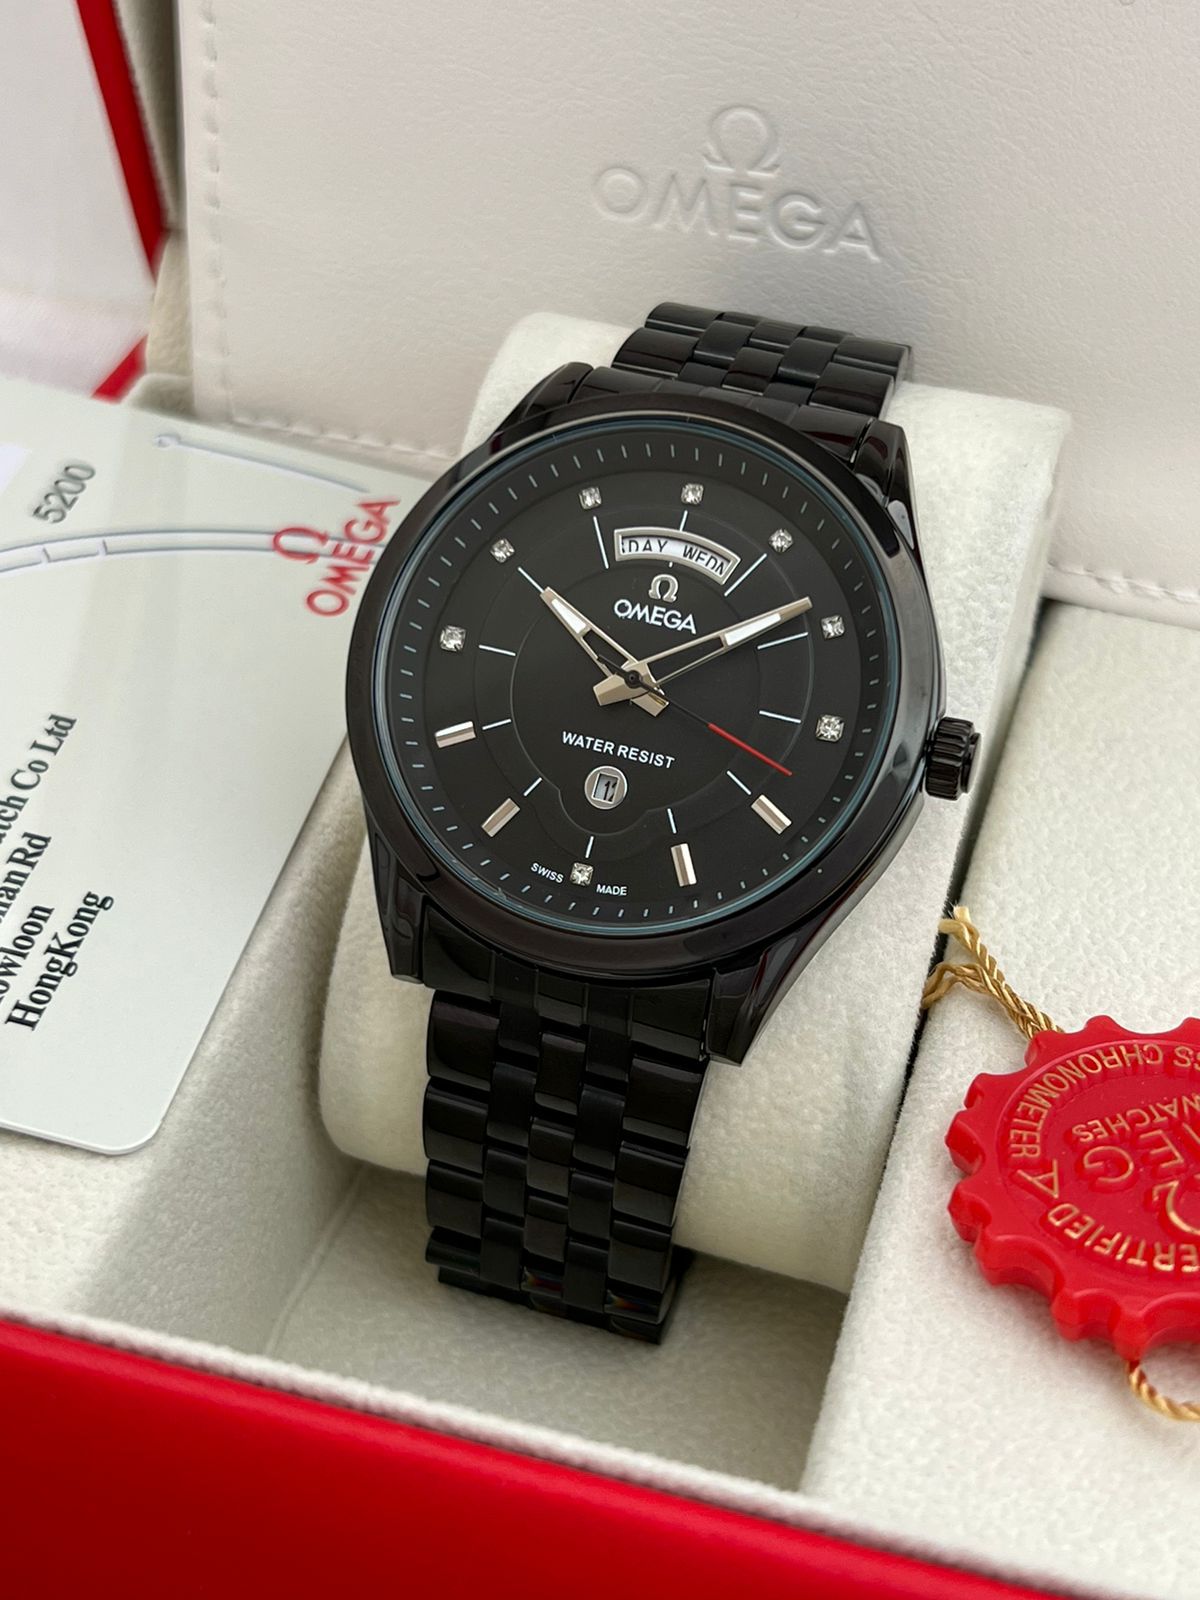 Omega 7a Premium Watch